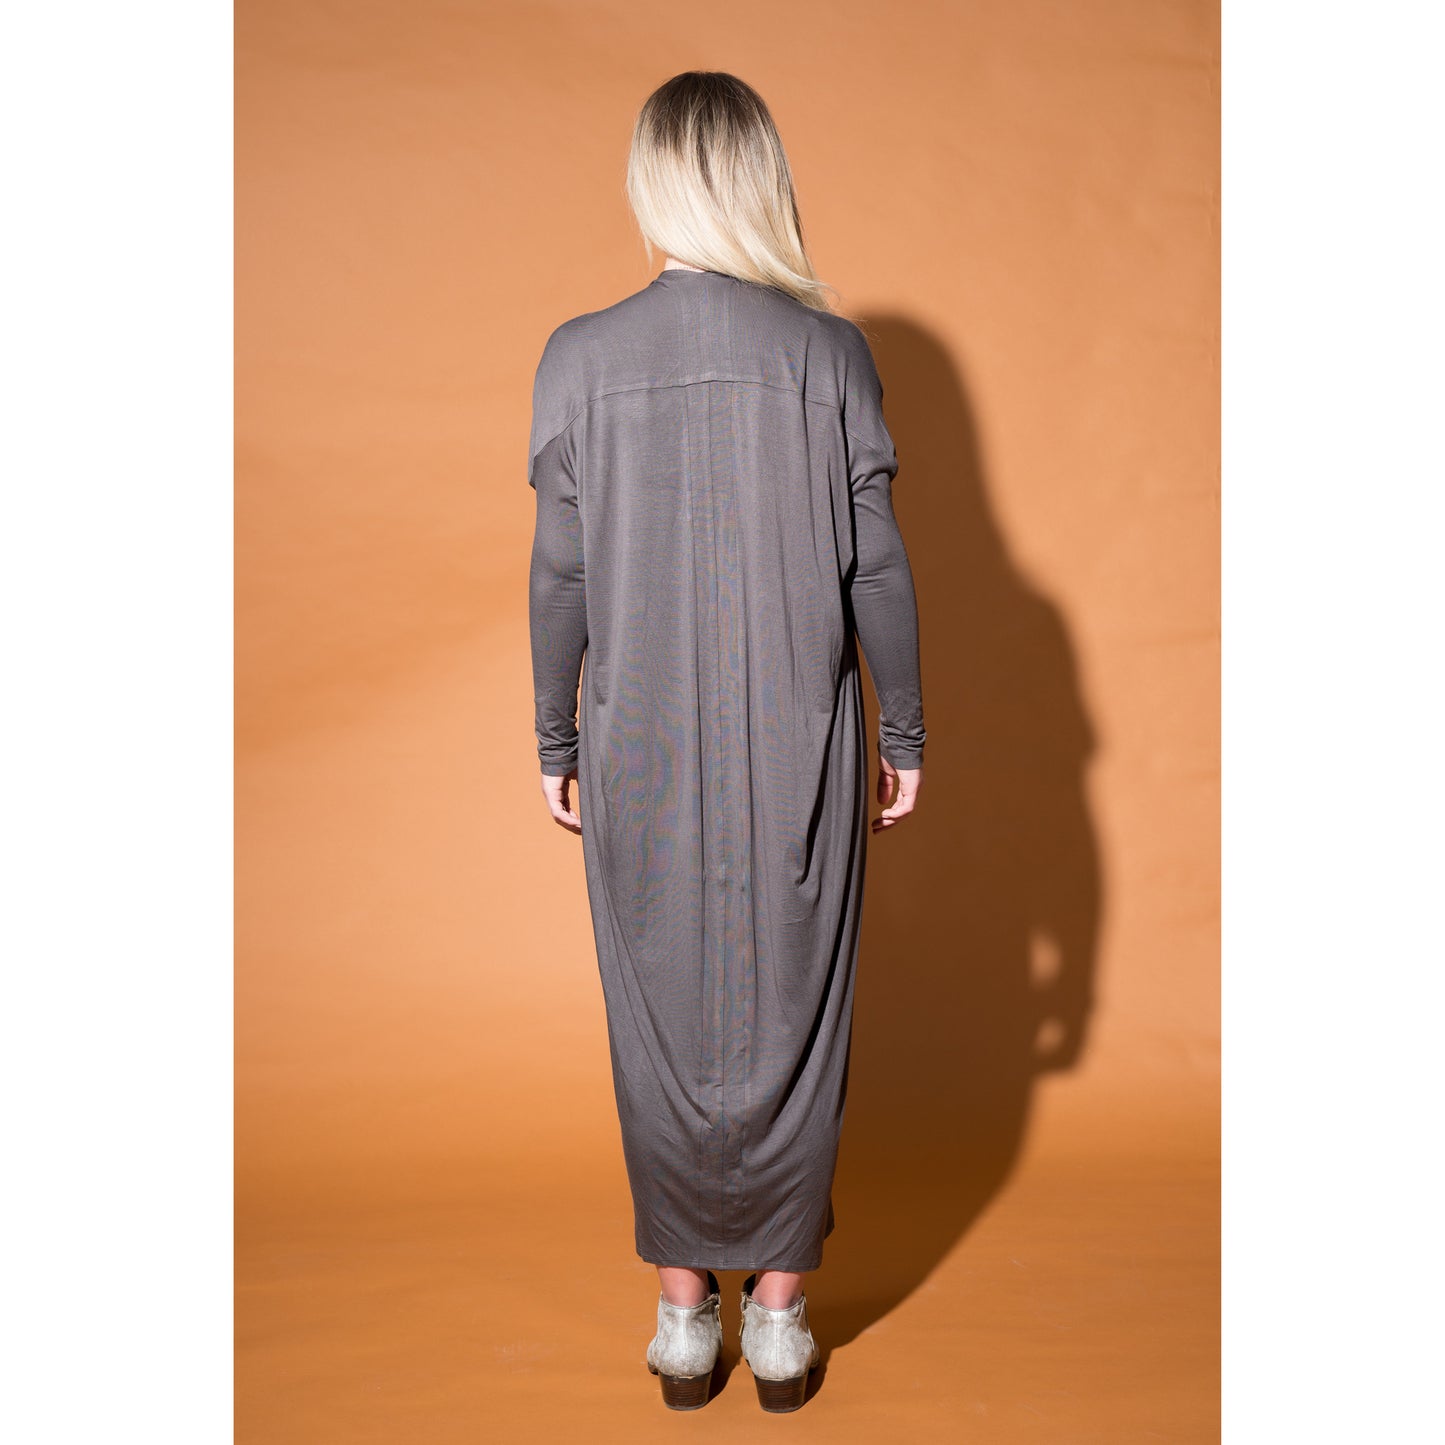 Laura Siegel Collection - Jersey Dress-  Deep khaki